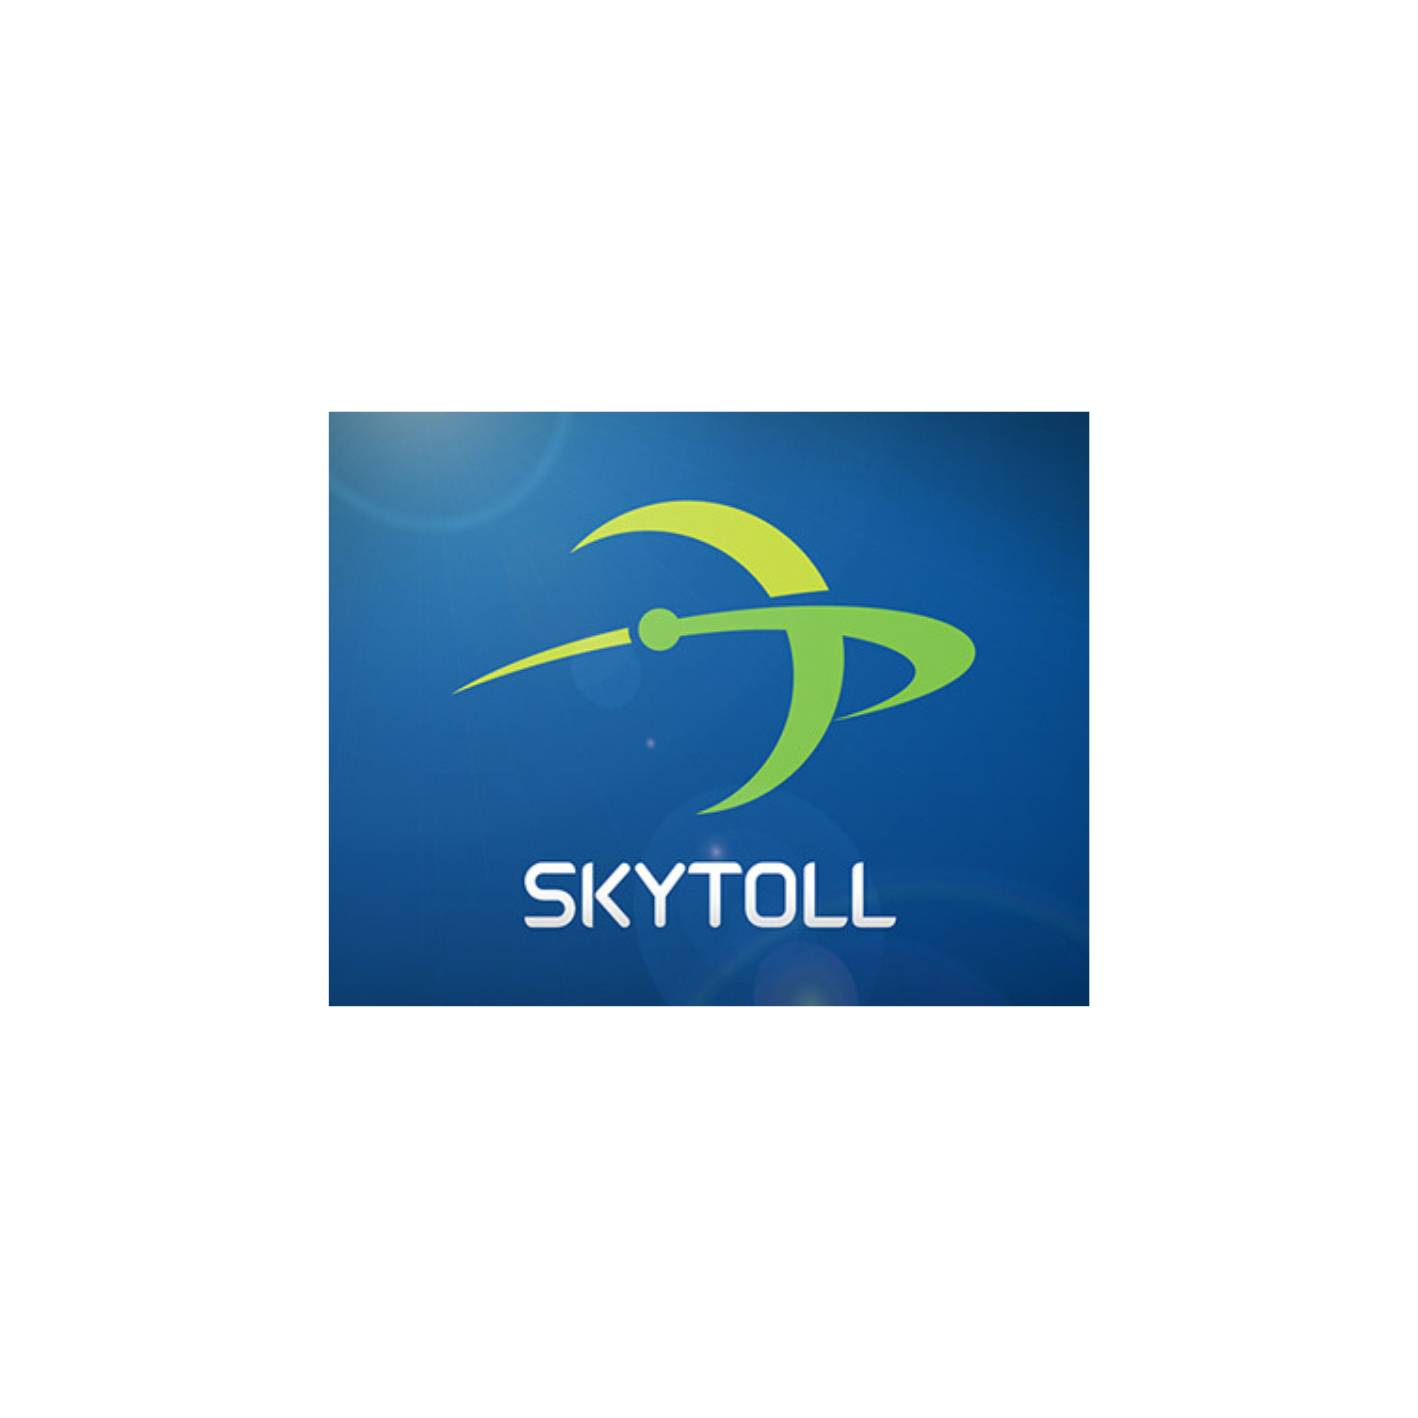 Skytoll-logo